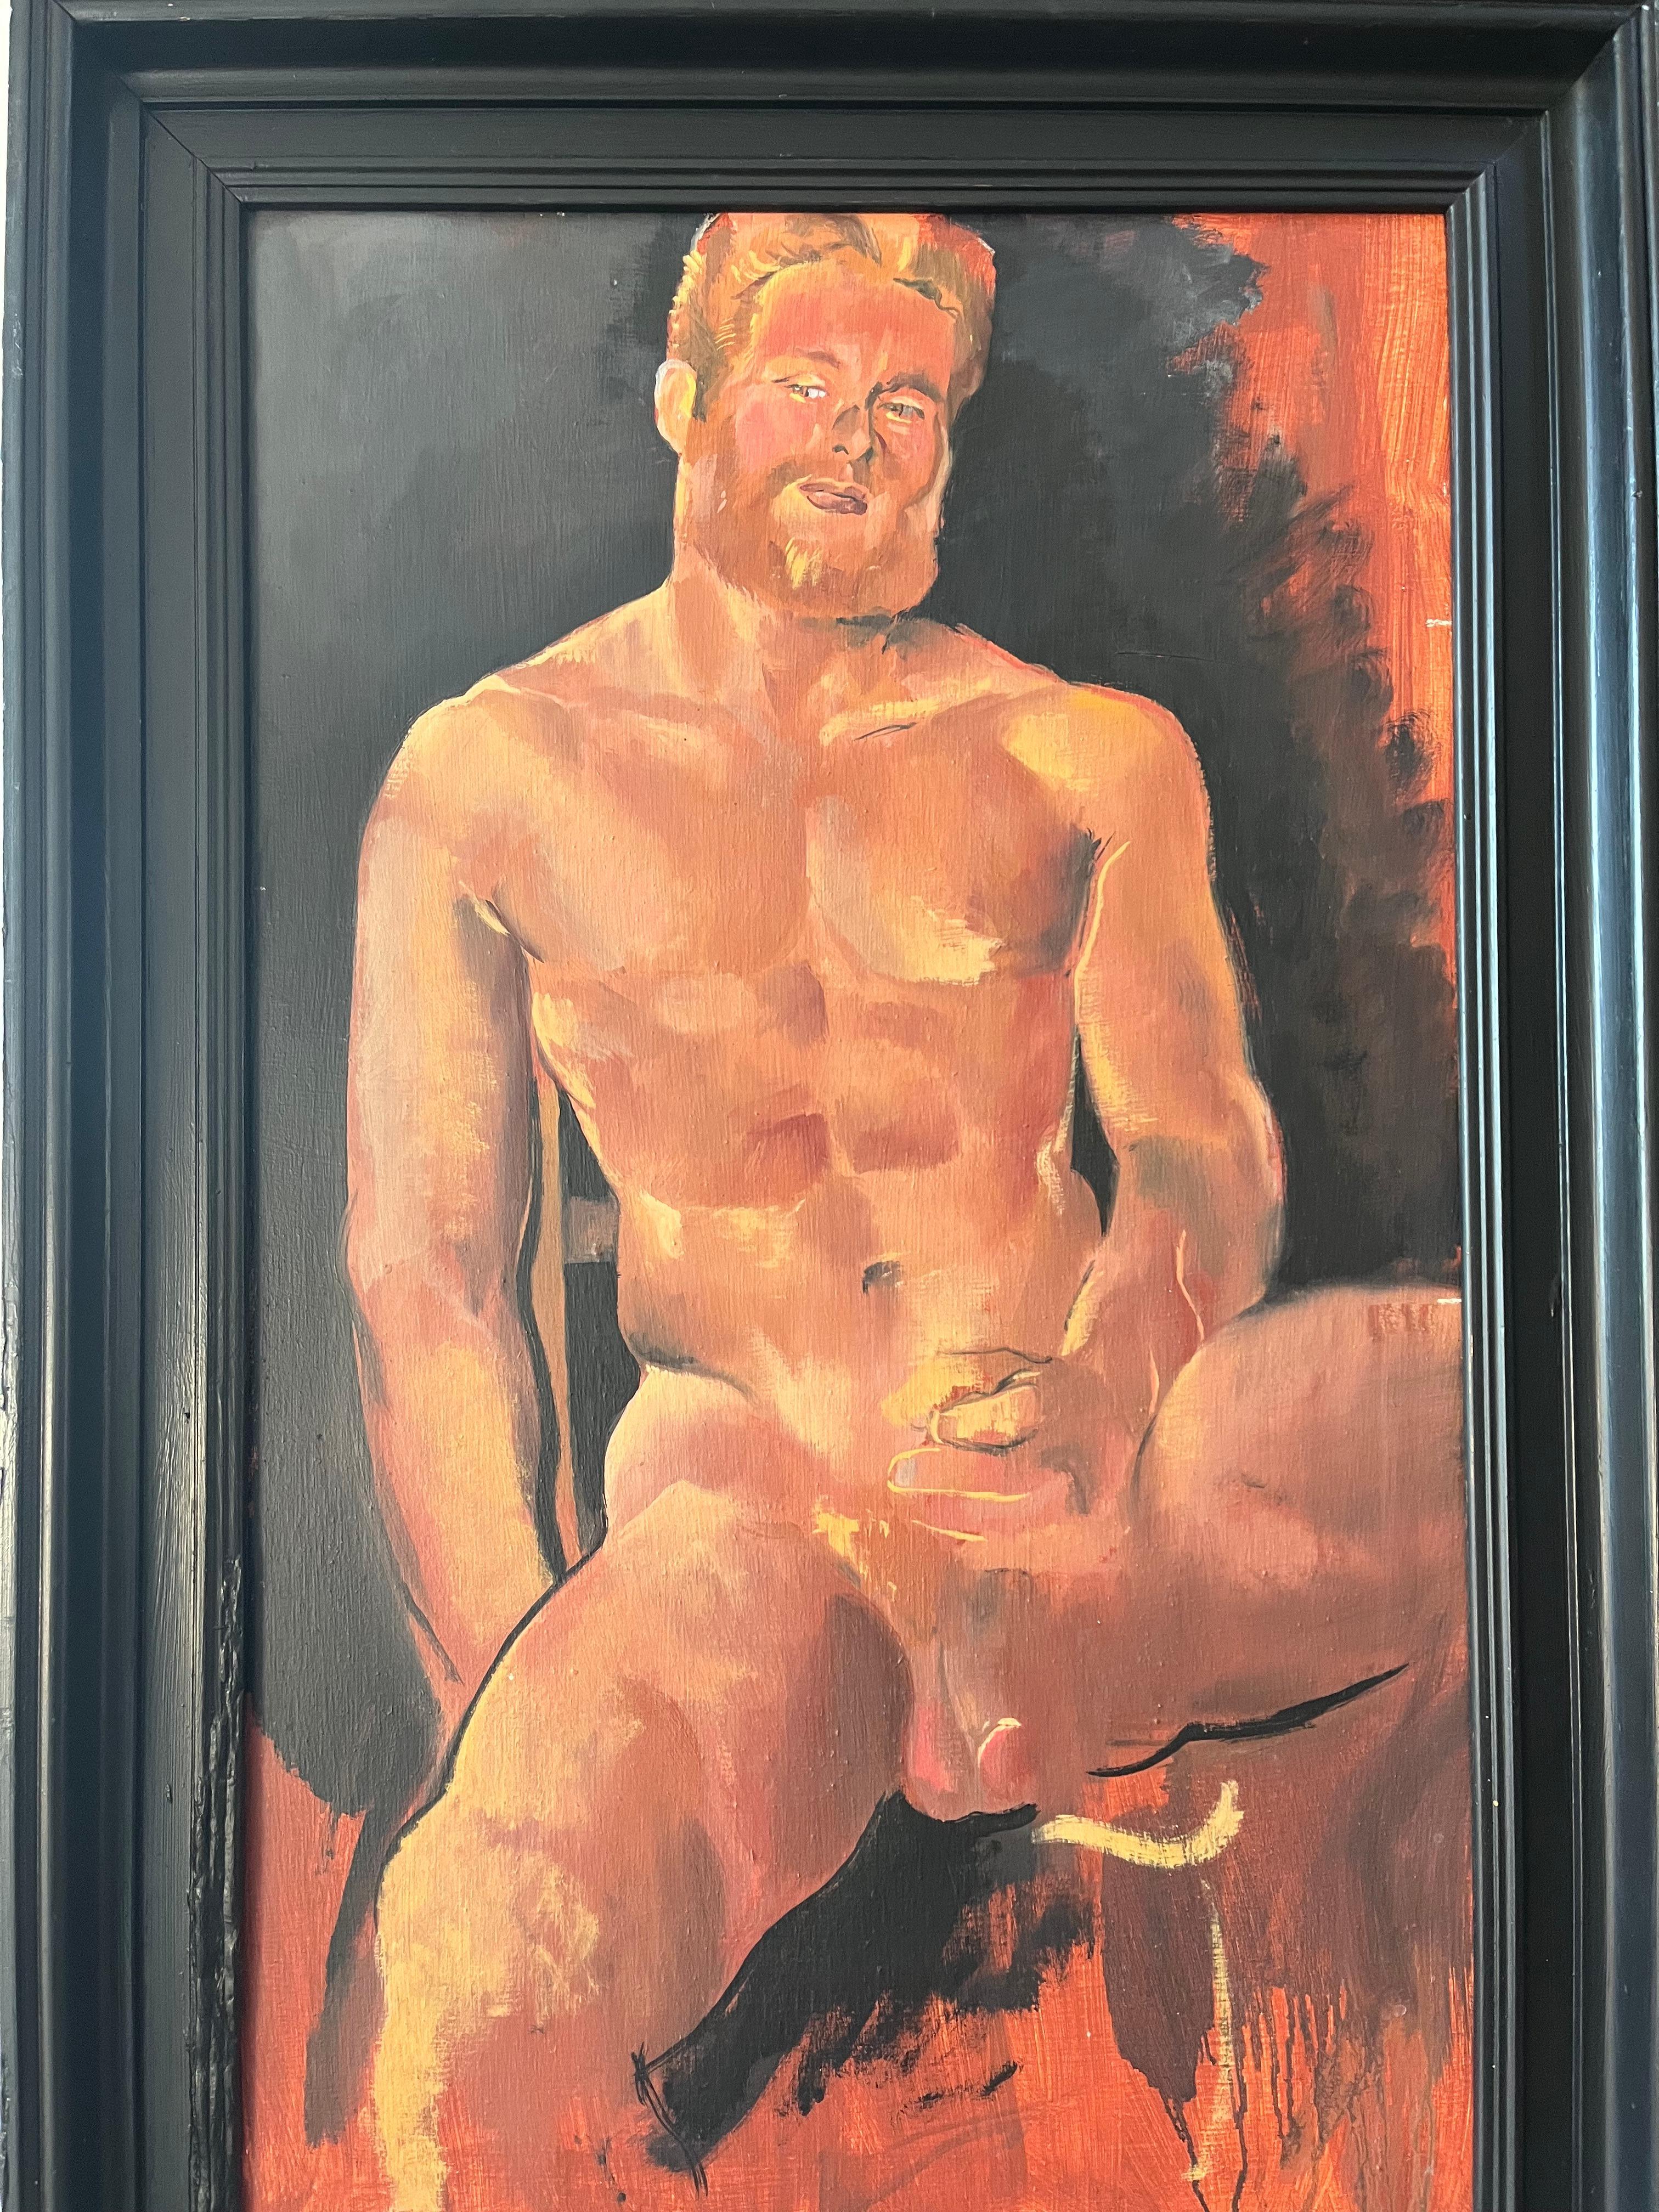 1980er Jahre Erotischer männlicher Akt, Porträt des Liebhabers des Künstlers, ikonisches Stück aus der Geschichte der Homosexualität (Moderne), Painting, von Philip Core